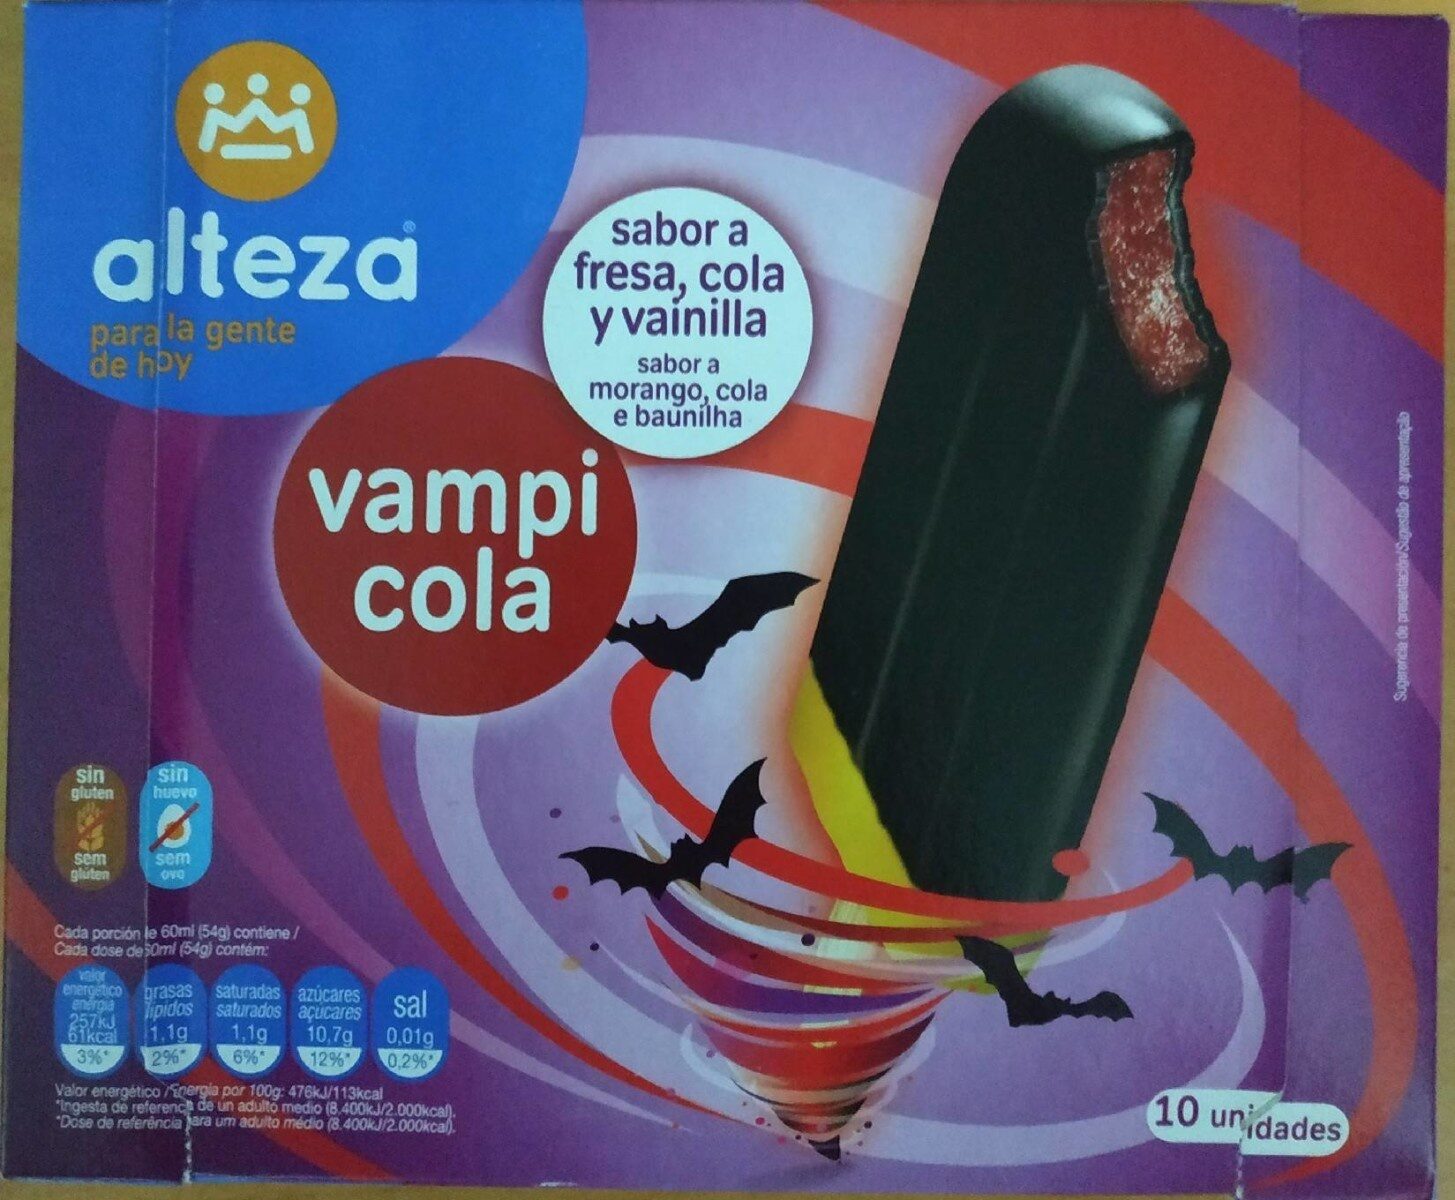 Vampi cola - Product - es